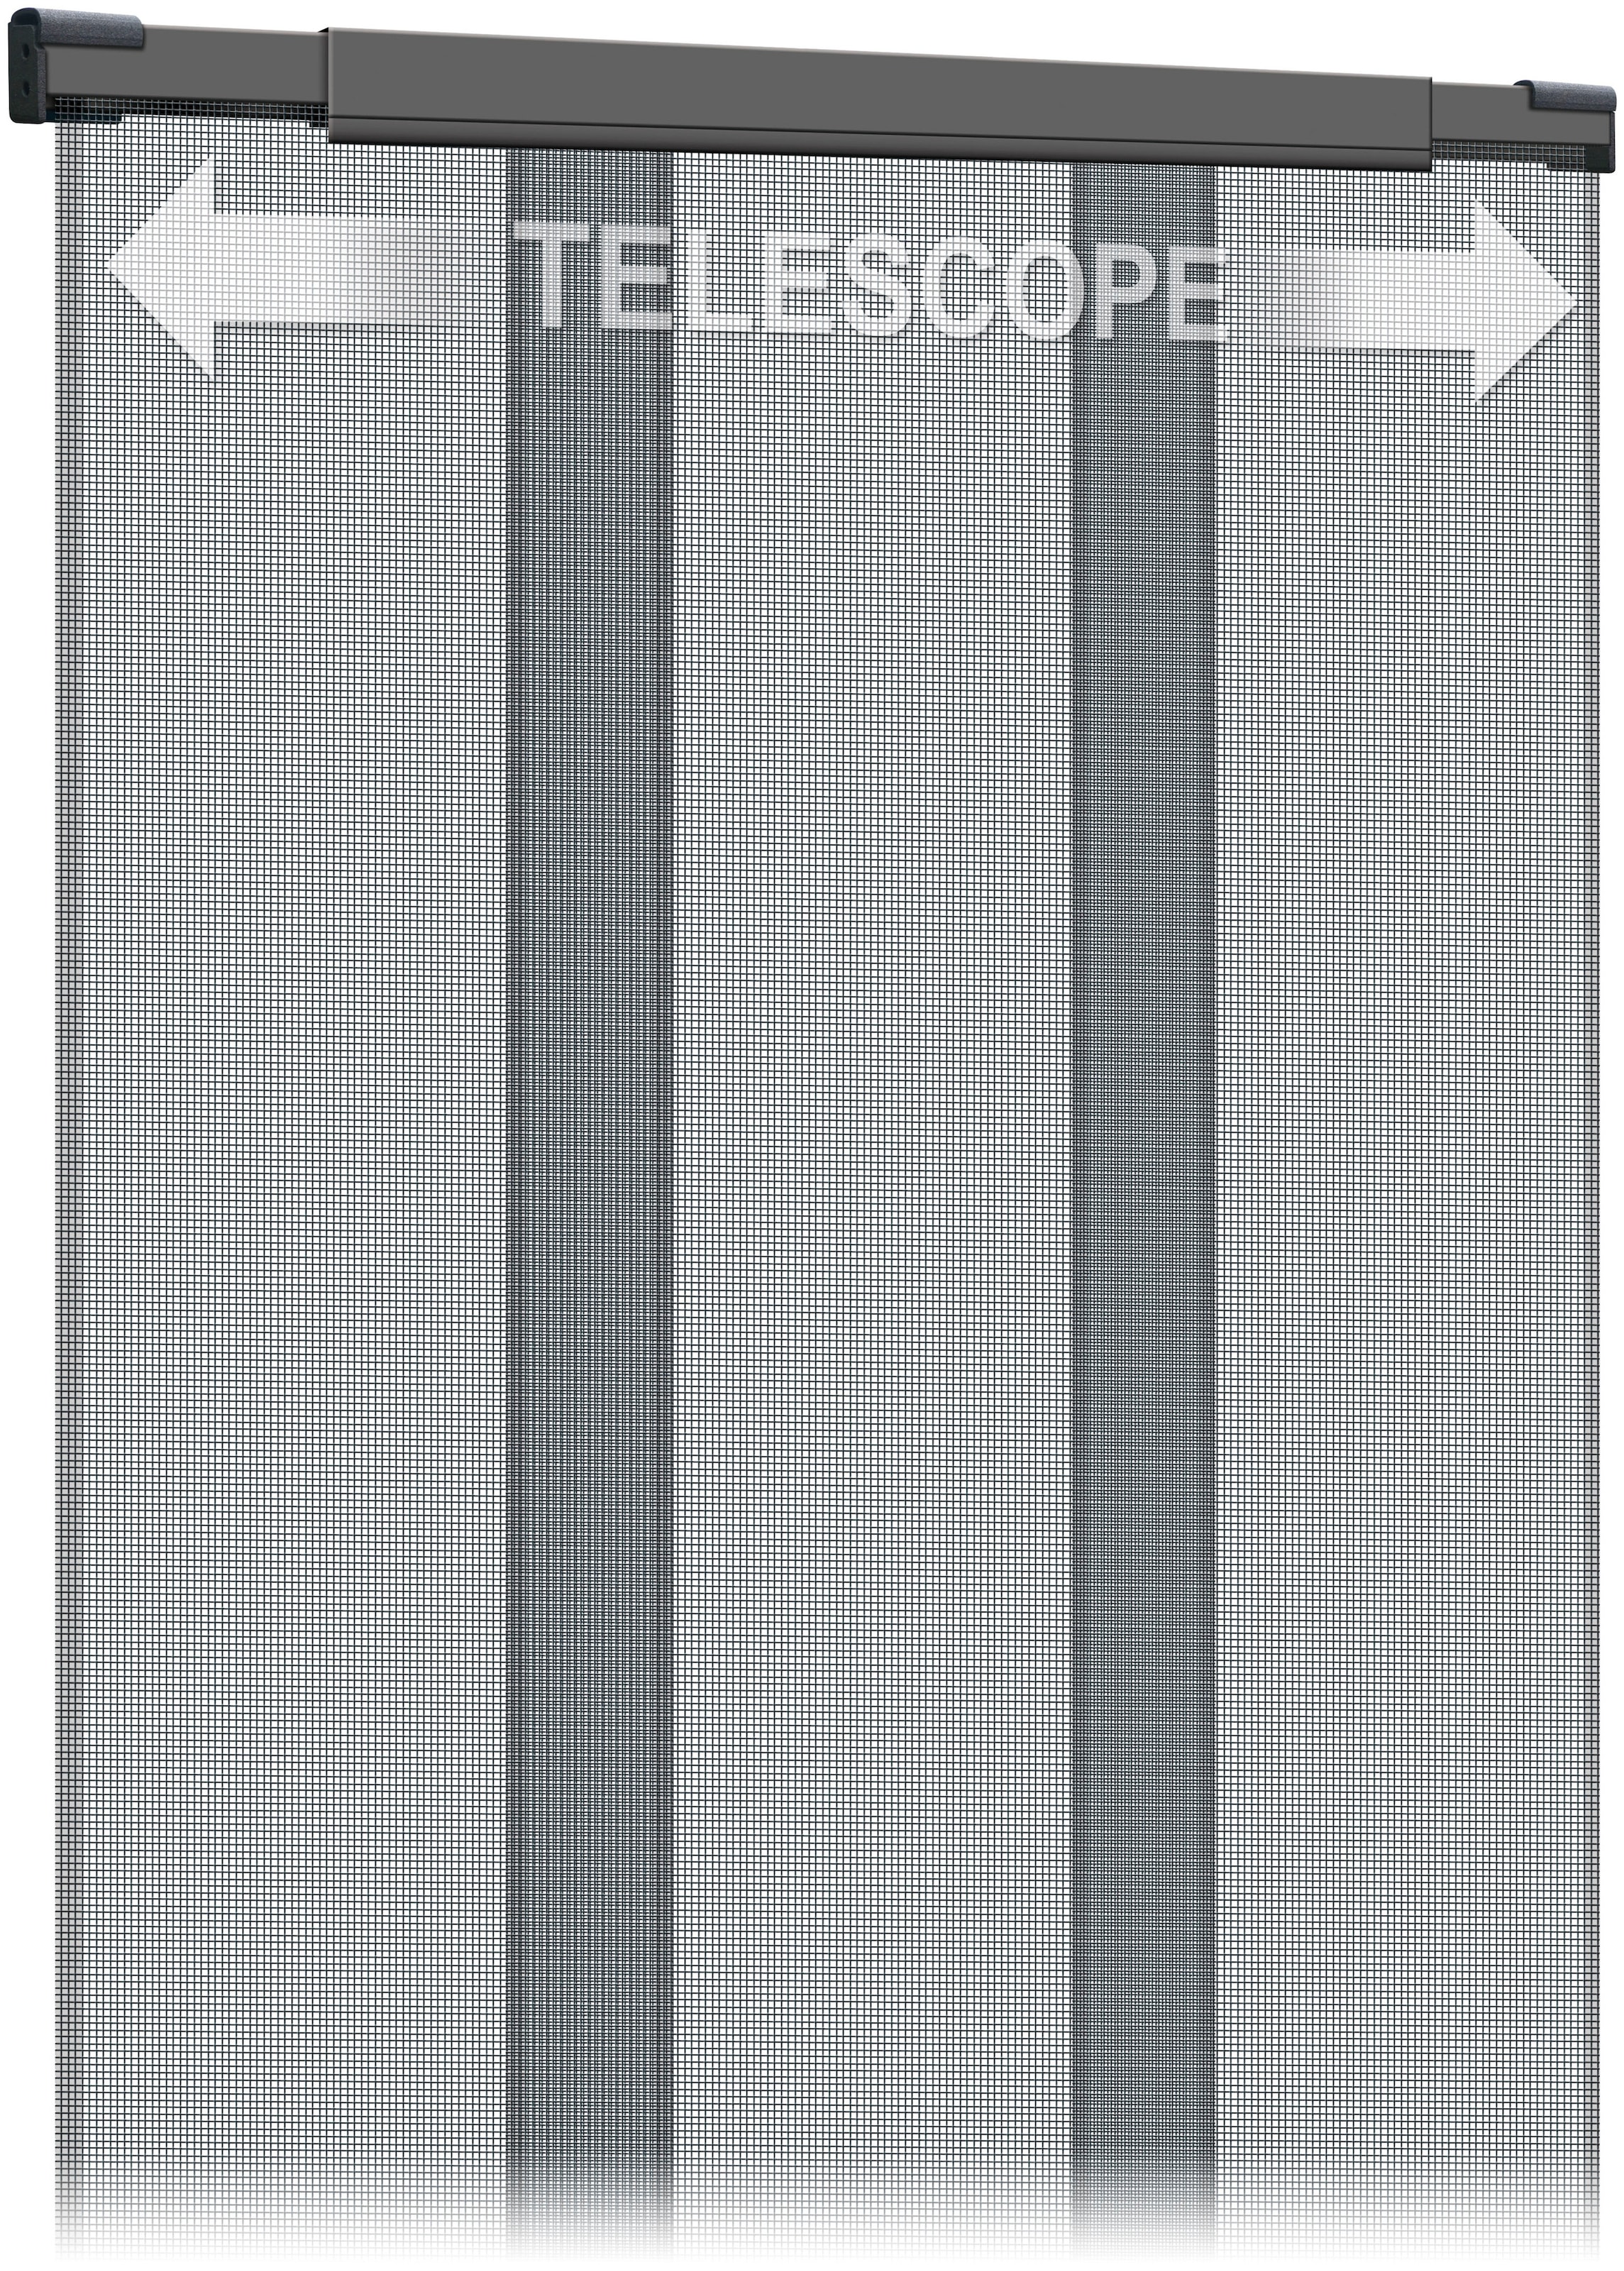 SCHELLENBERG Insektenschutz-Vorhang »Fliegengitter Vorhang Balkontür«, Fliegengitter aus Fiberglas, 70-95 x 220 cm, anthrazit, 50653